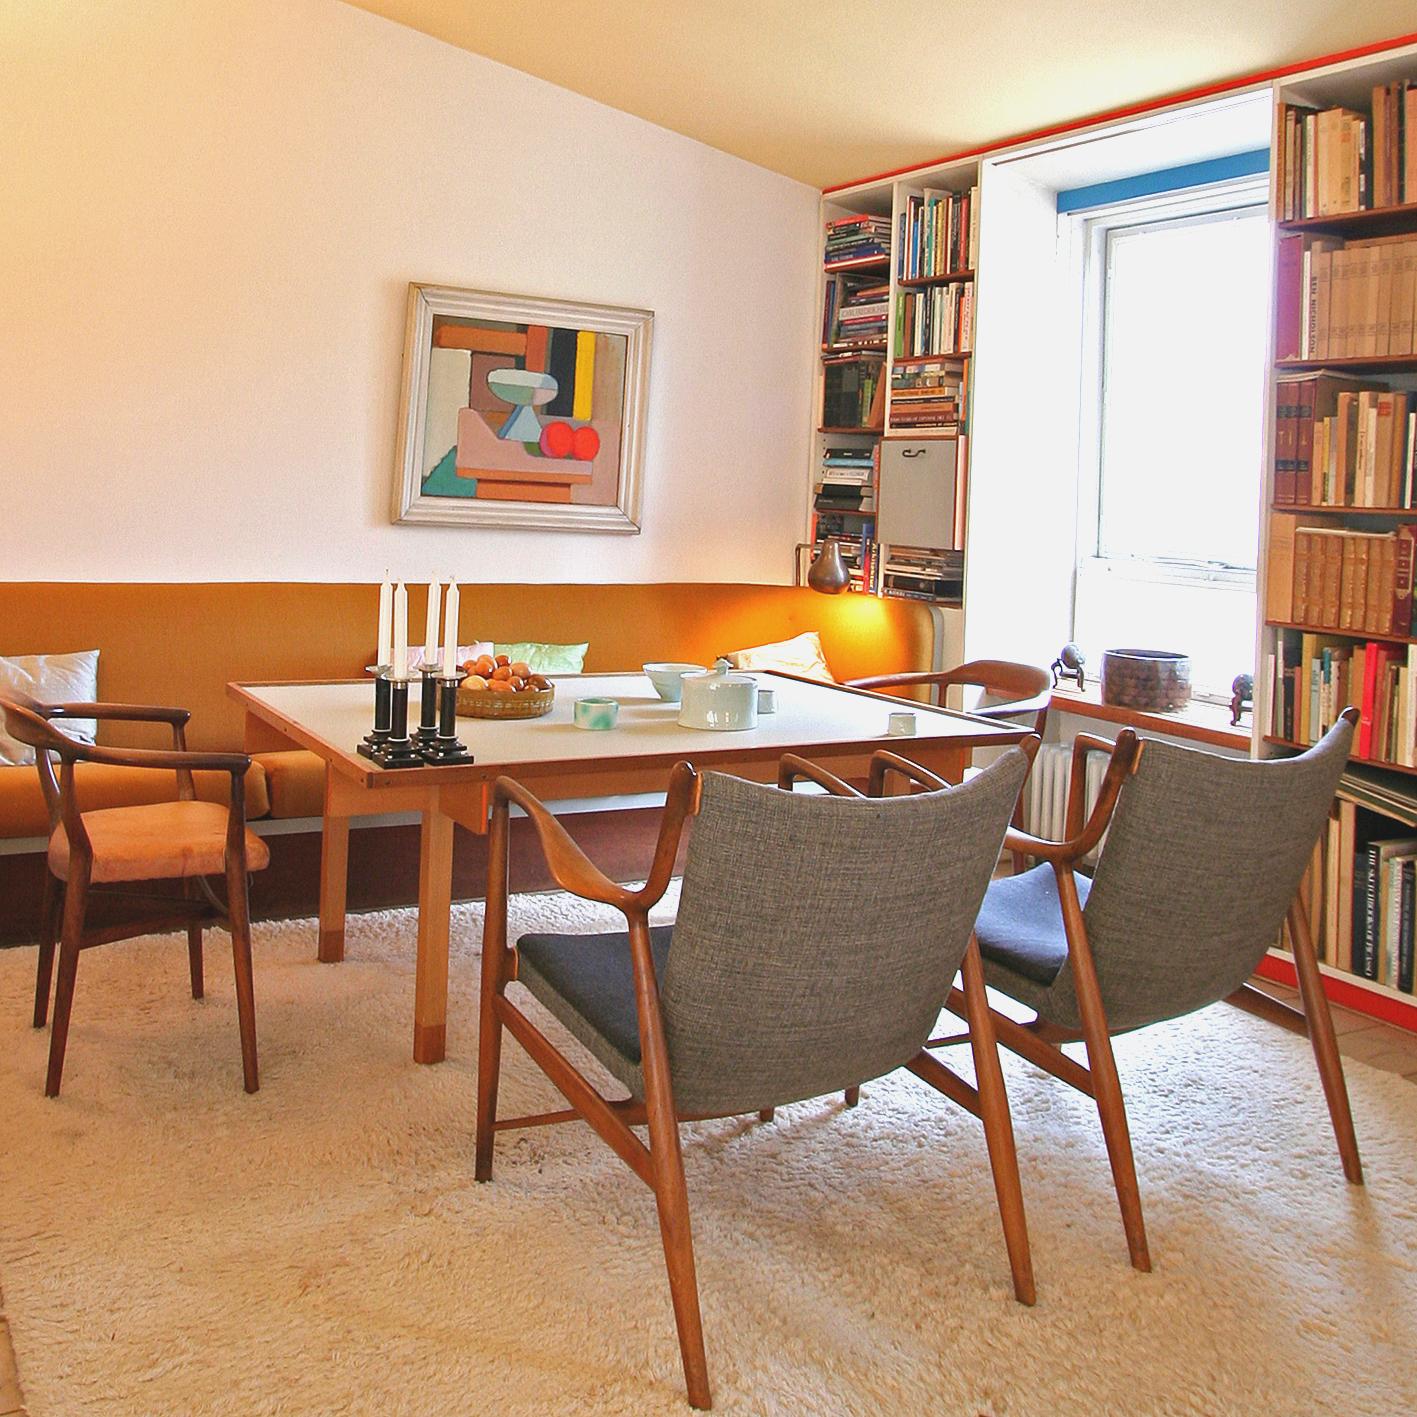 Retro-Wohnzimmer im 50er Jahre Look #bücherregal #wohnzimmer ©Onecollection/Finn Juhl